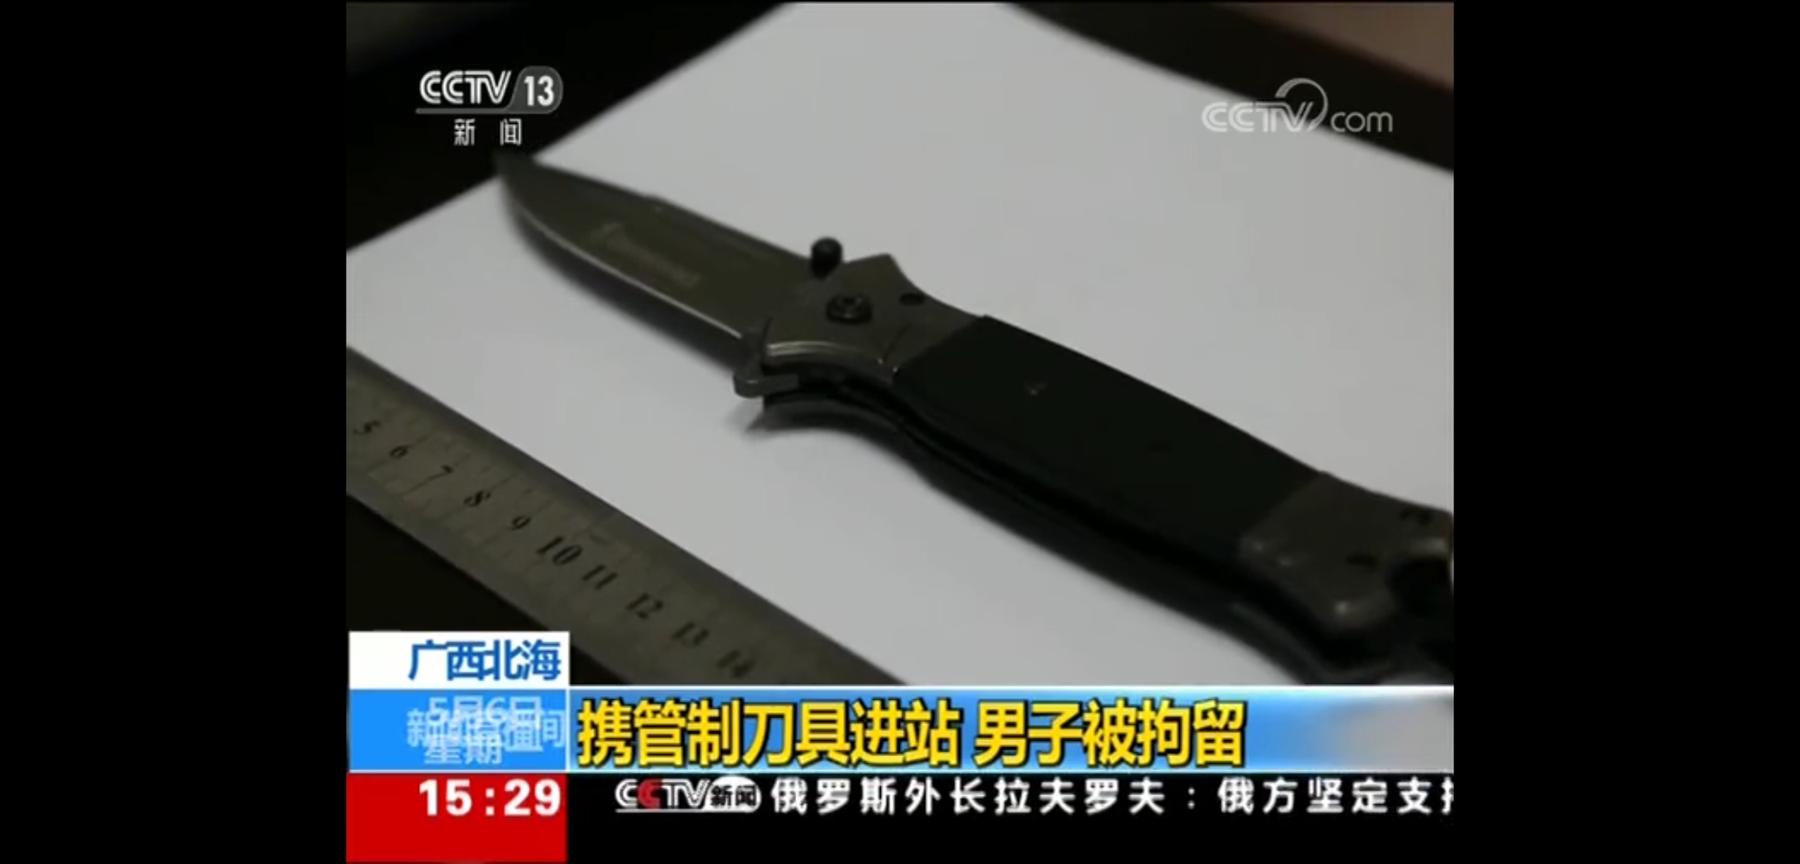 "一男子在北海带管制刀具进火车站被拘留!上央视新闻了!